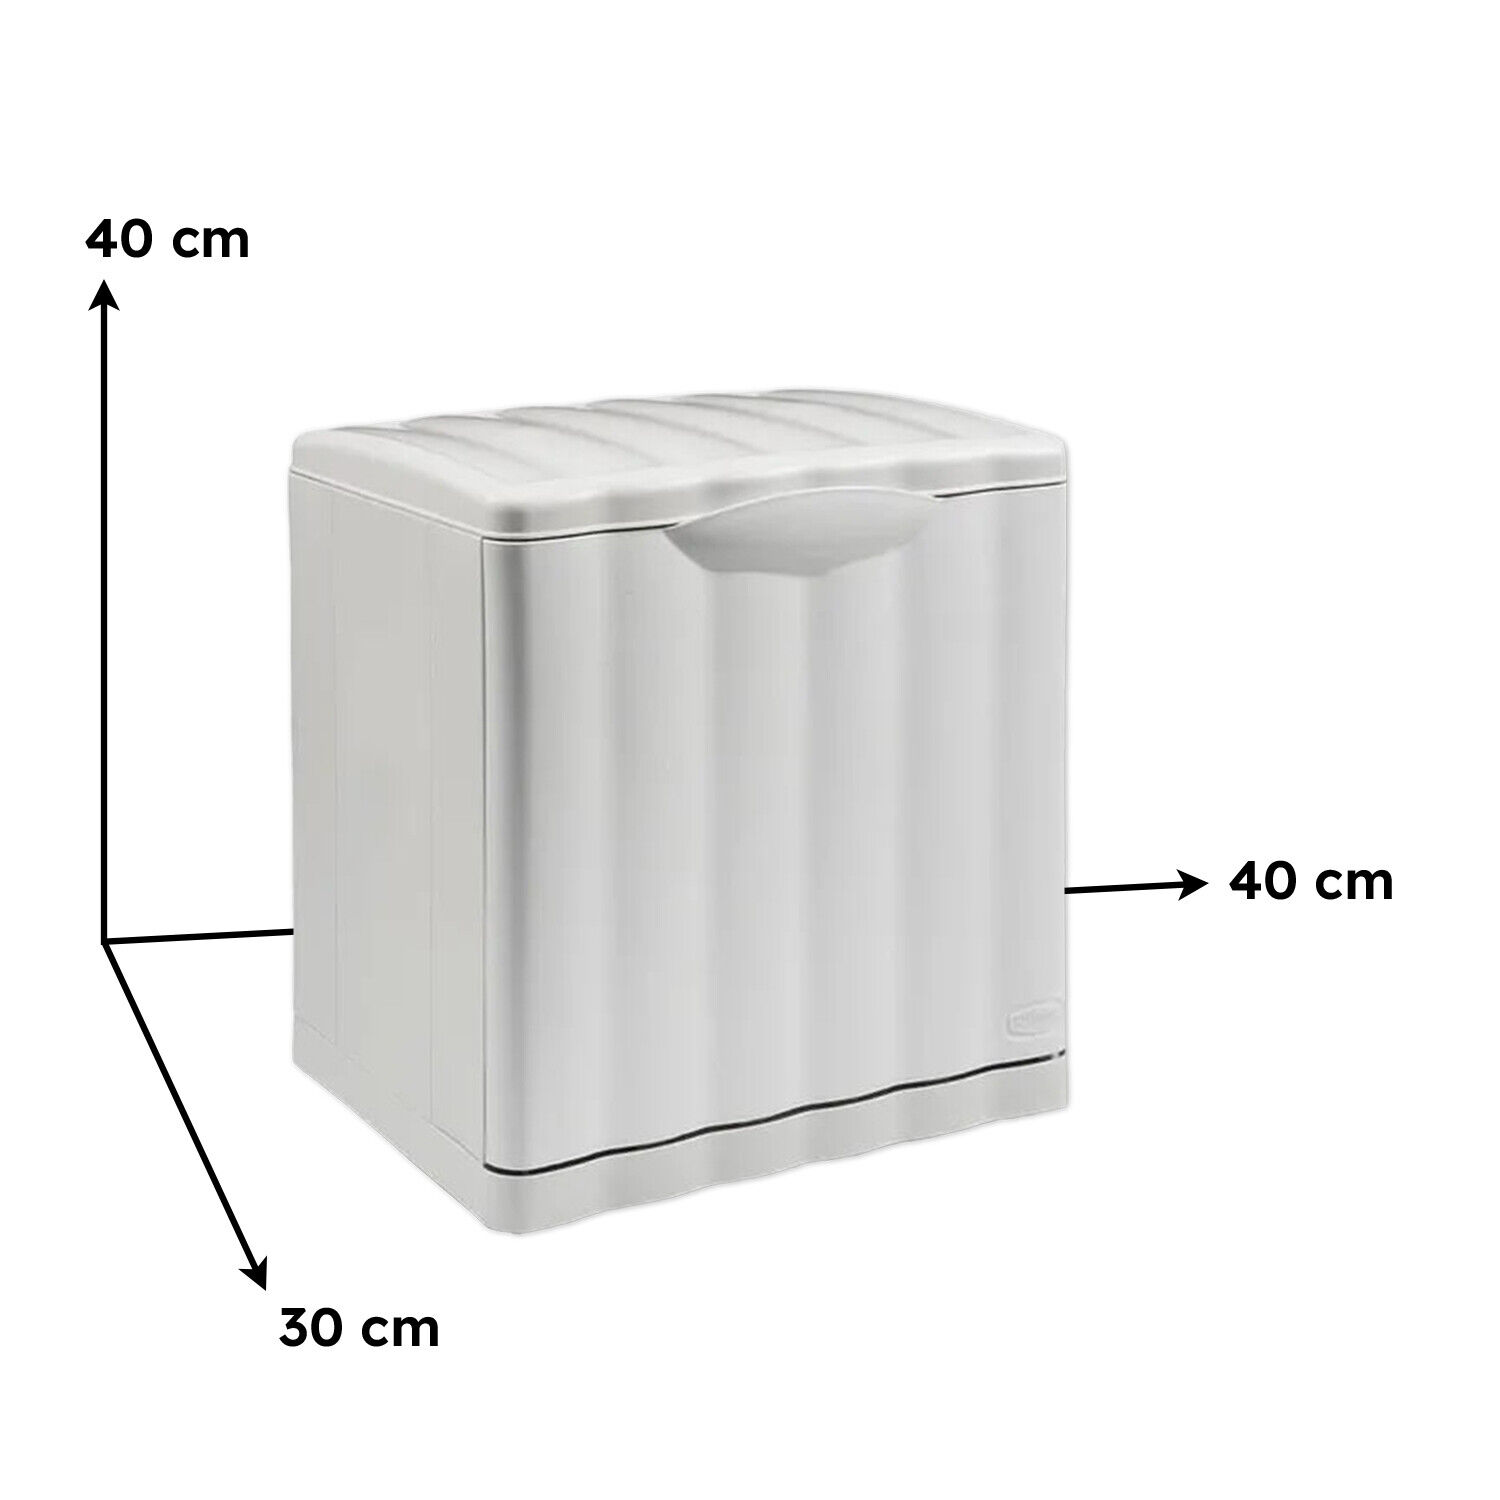 3 bidoni per pattumiera da 20 litri di capacità, impilabili, di colore  bianco, adatti per la raccolta differenziata di vetro, carta e plastica :  : Casa e cucina